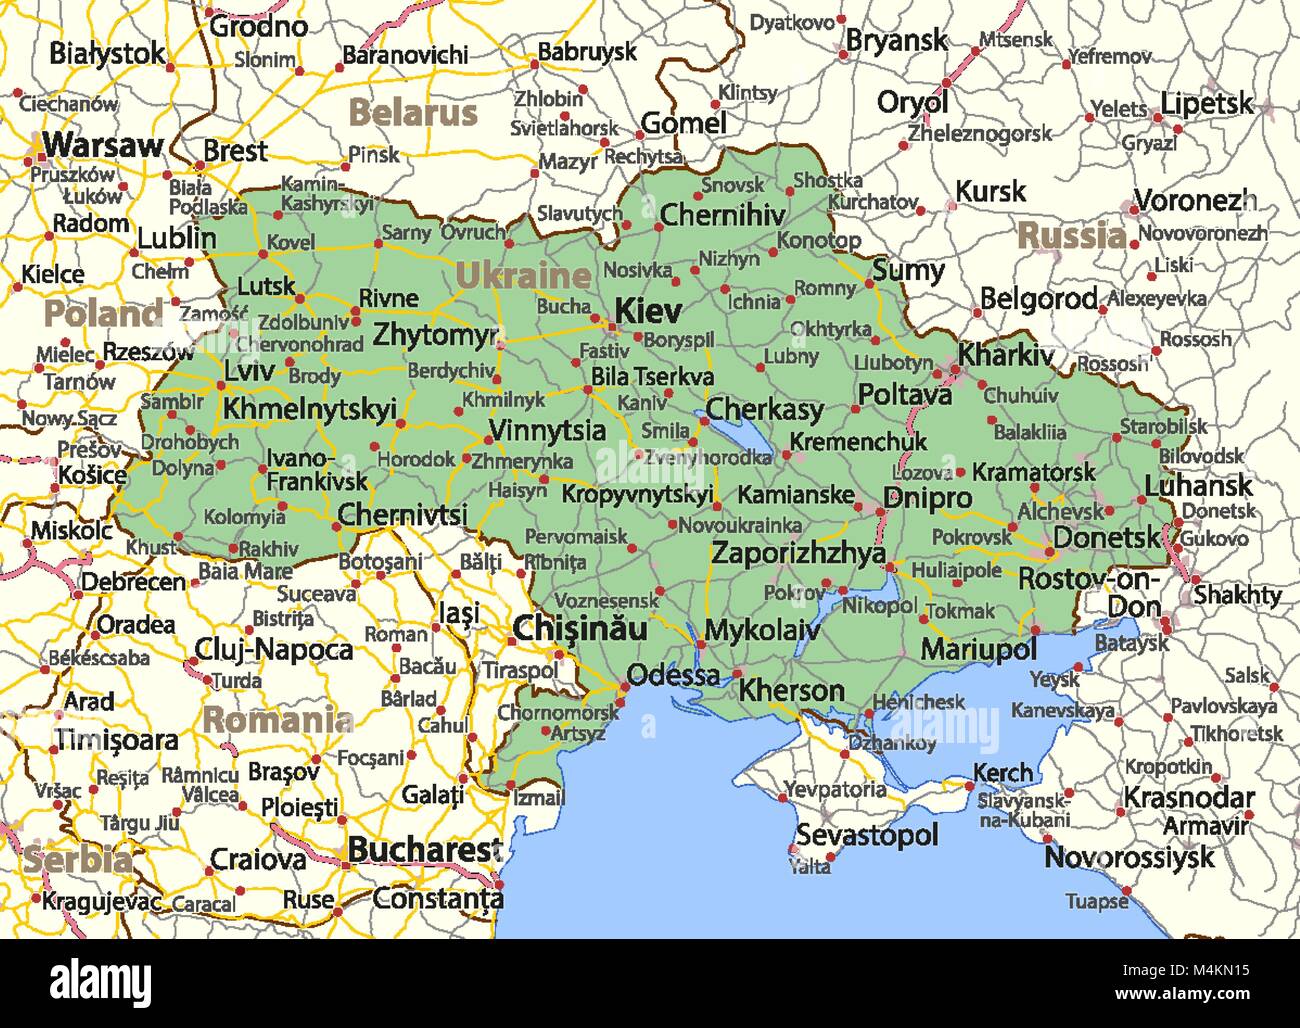 Mappa di Ucraina. Mostra i confini, zone urbane, nomi di località e strade. Le etichette in inglese dove possibile. Proiezione: proiezione di Mercatore Immagine e Vettoriale - Alamy